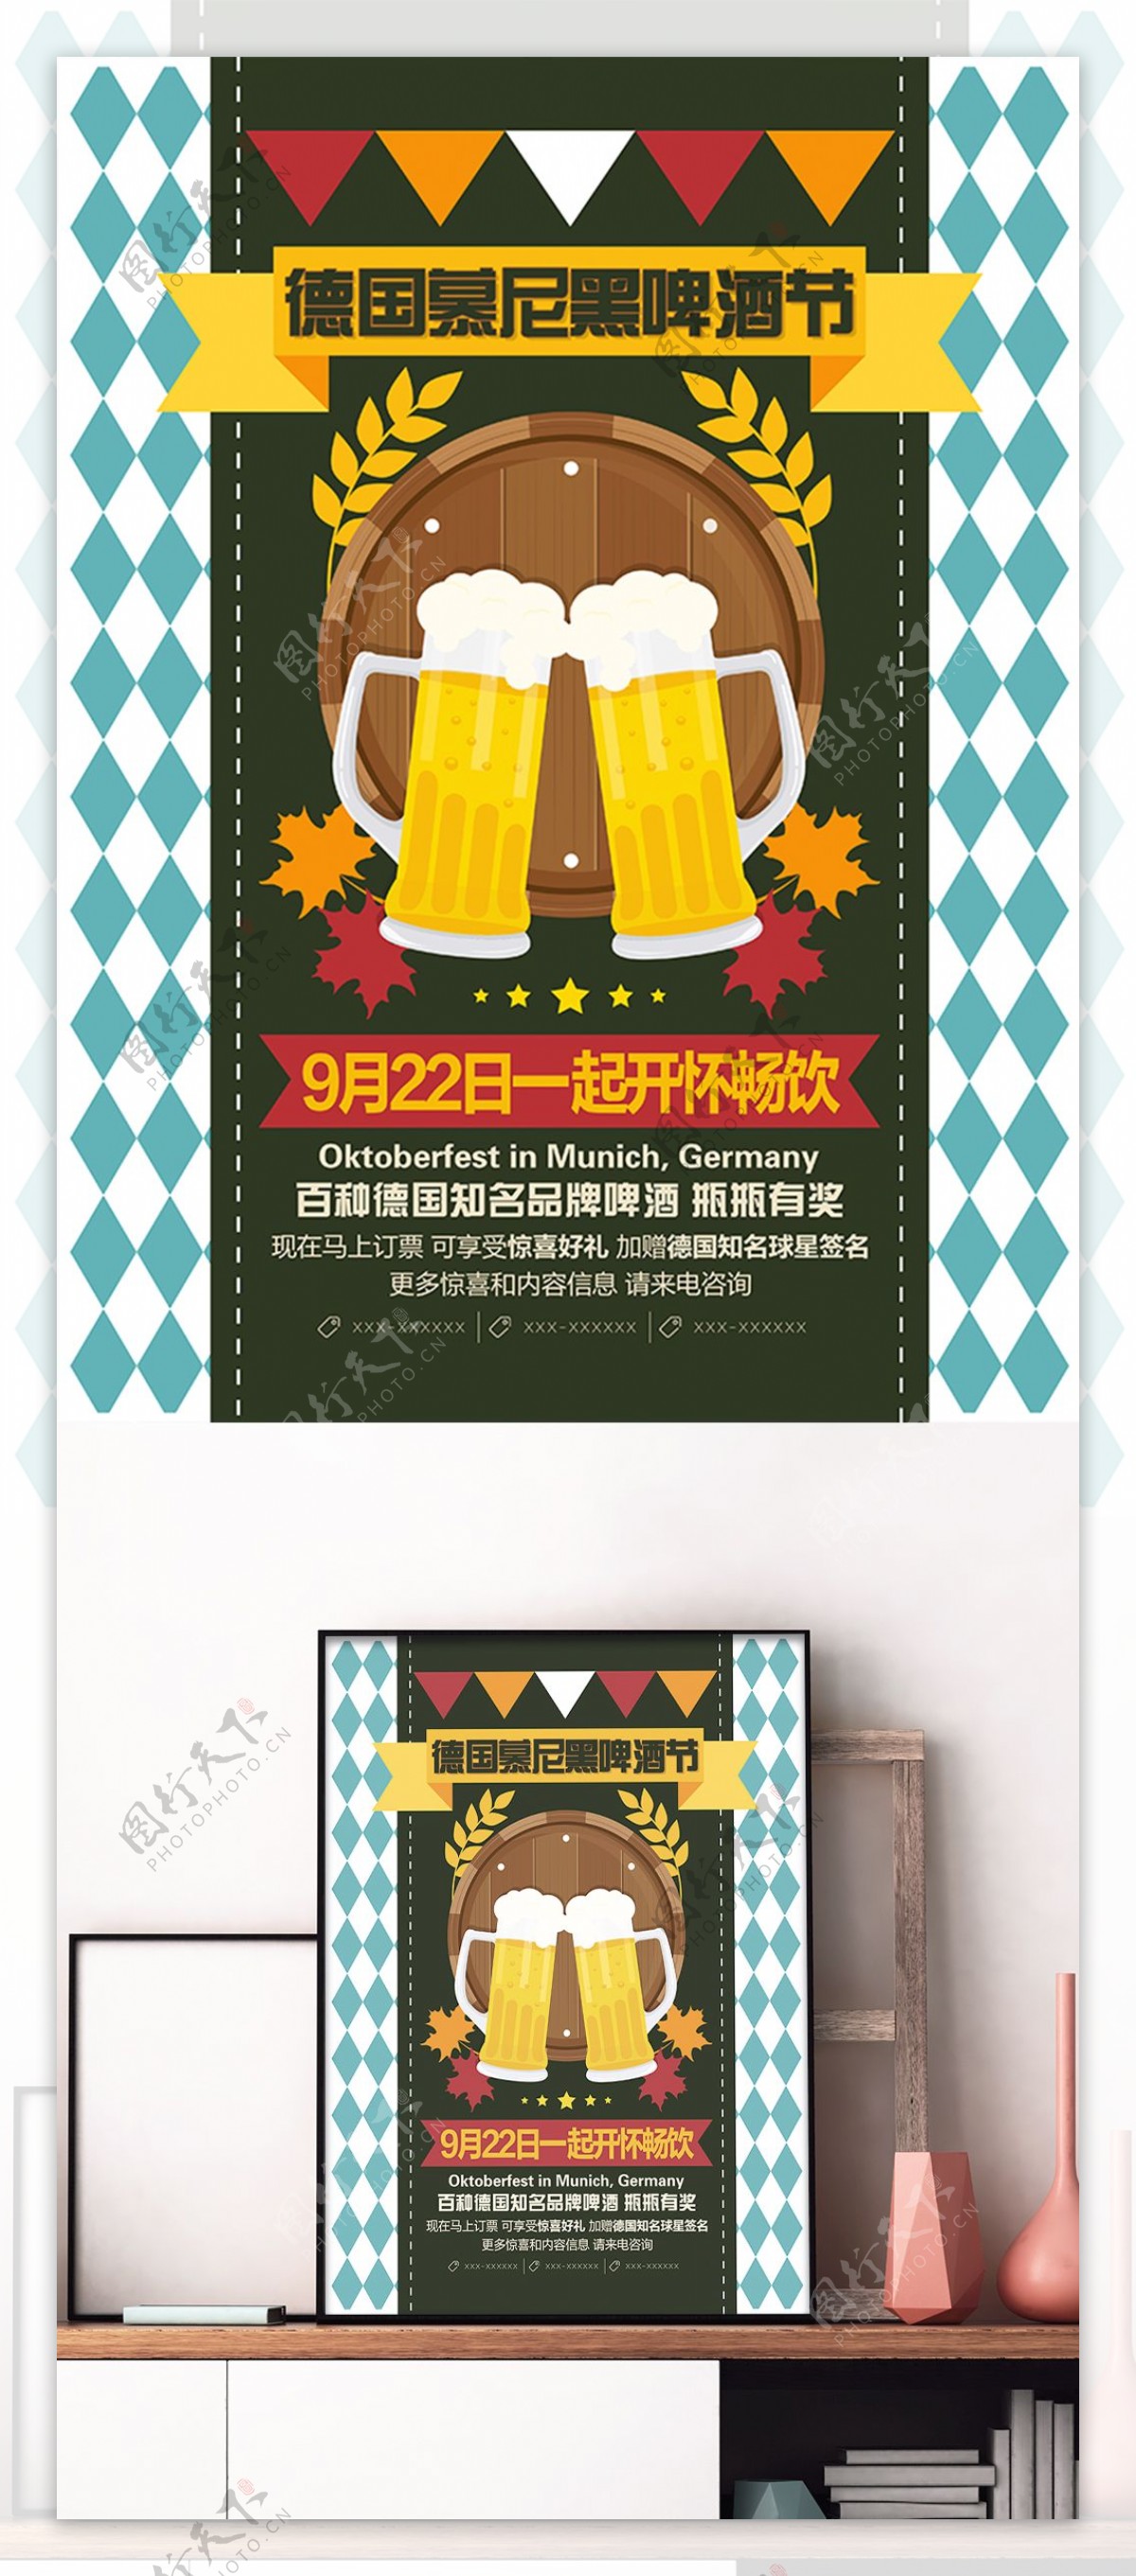 清新简约德国慕尼黑啤酒节活动宣传海报